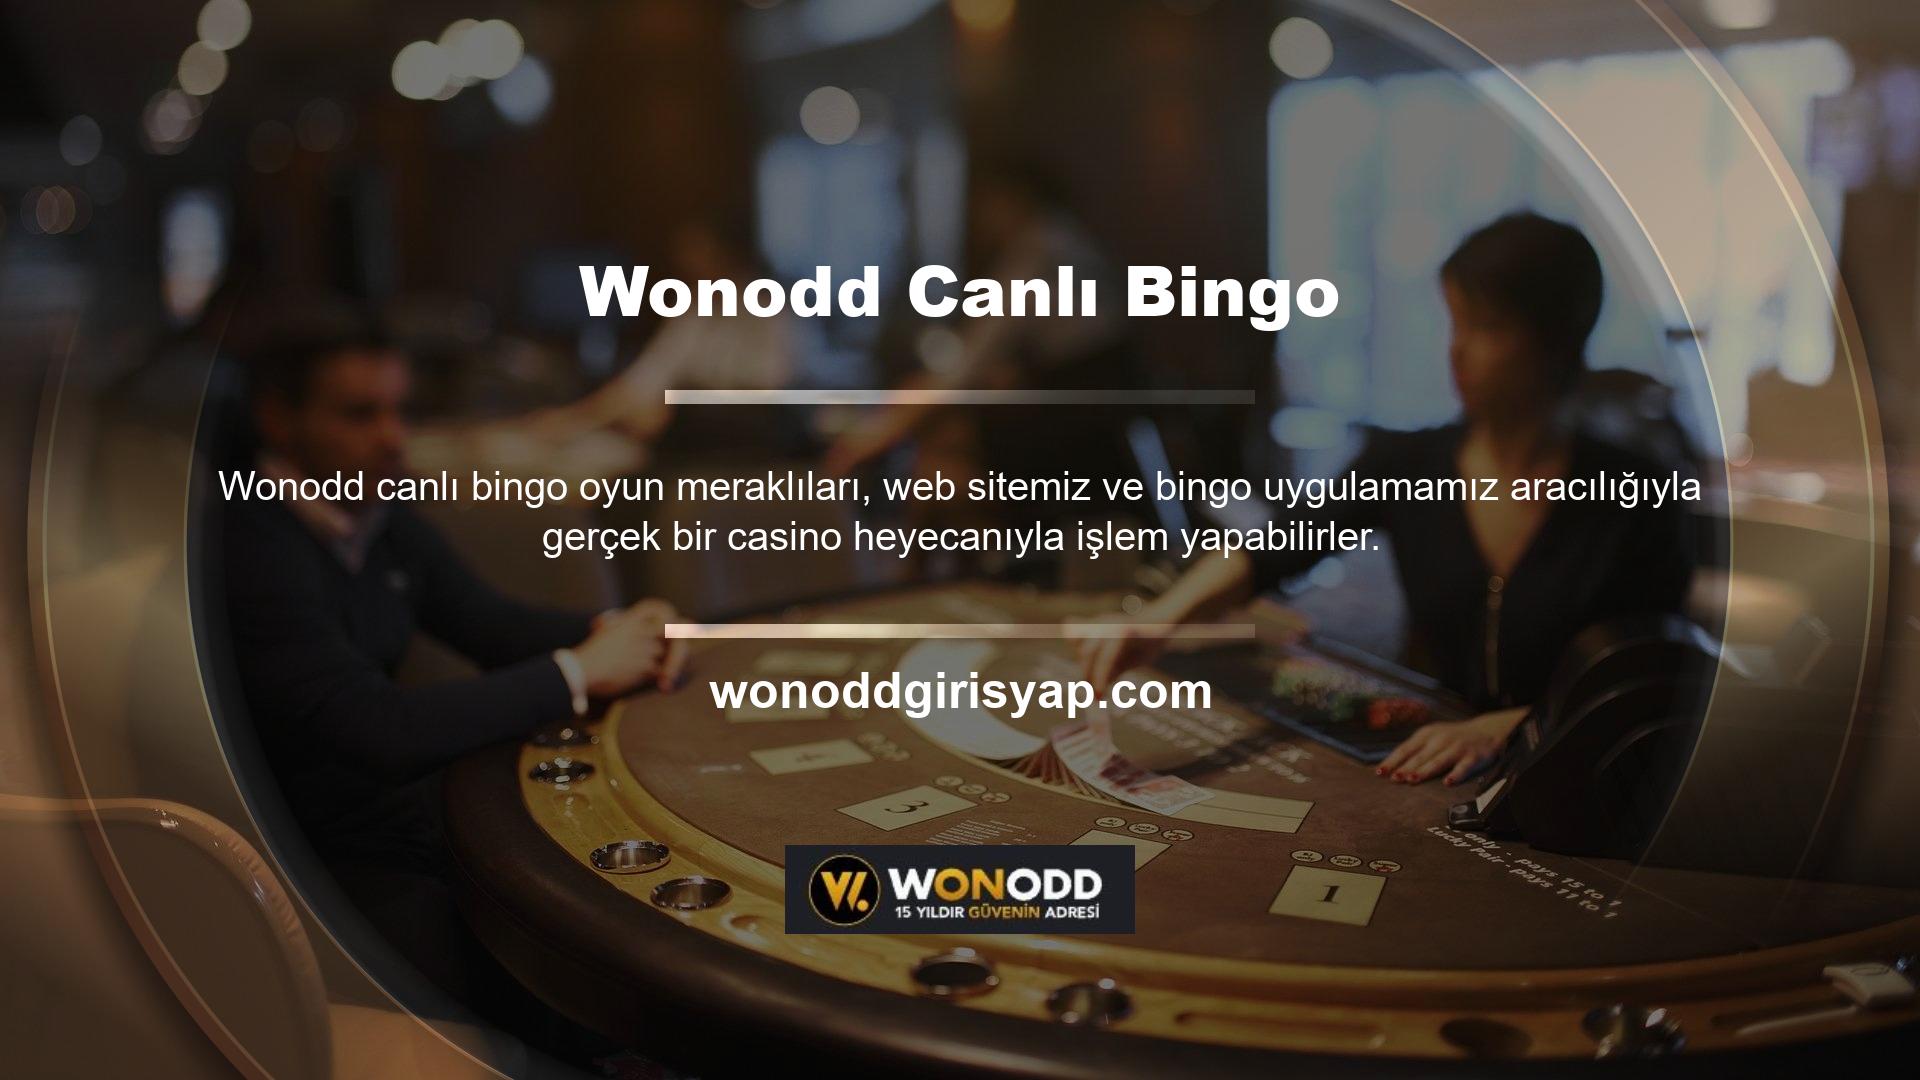 Wonodd Canlı Bingo uygulaması bahisçilere sitede gerçek bahis oynama imkanı sunmaktadır